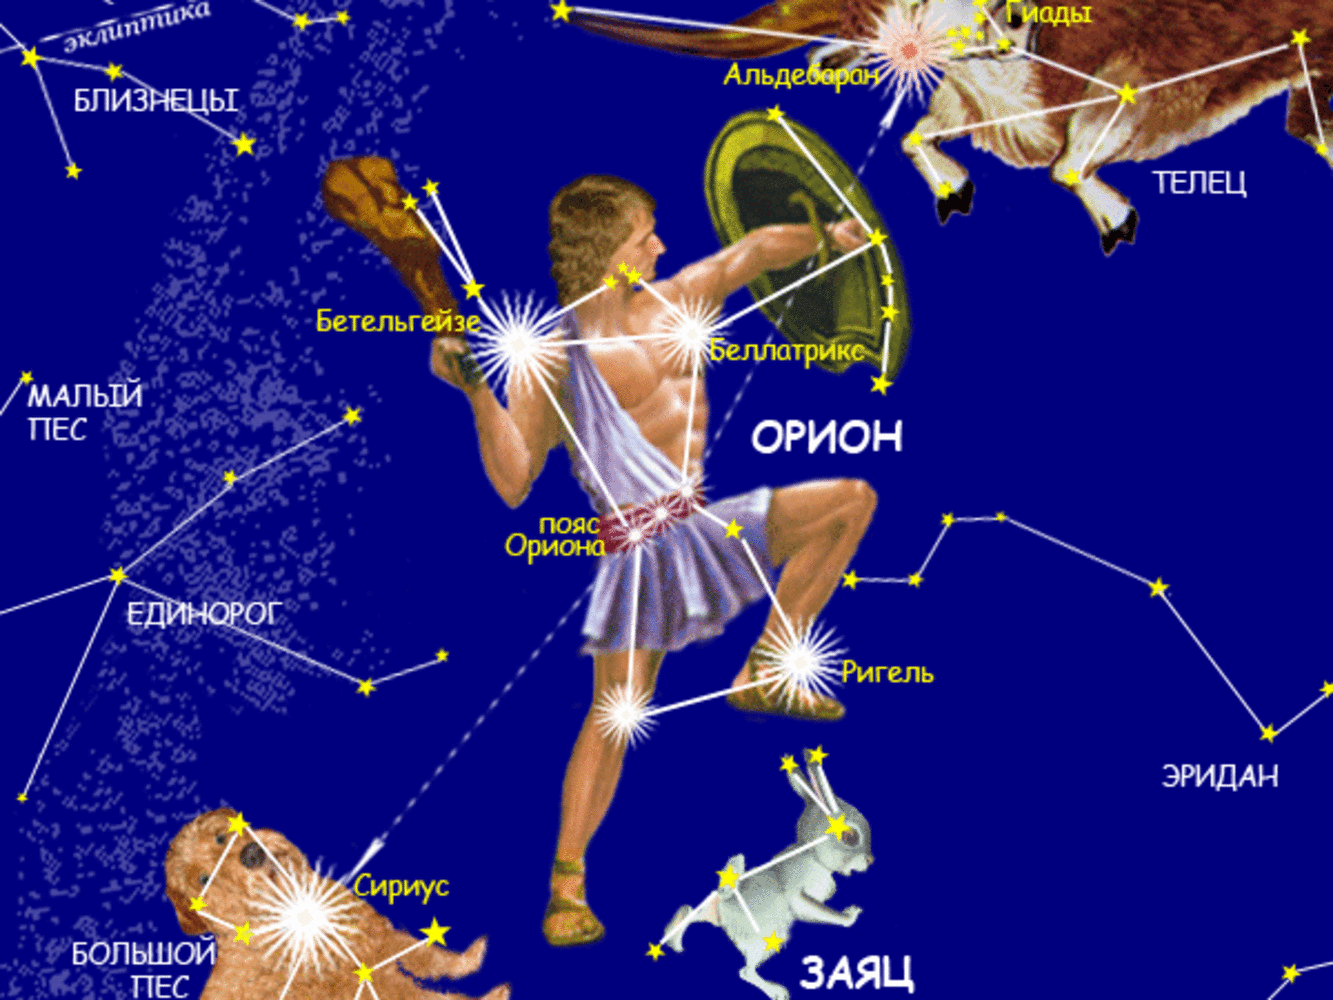 Орион завтра. Звезды созвездия Ореон. Созвездие Ореон название звезд. Созвездие Телец Альдебаран. Орион Созвездие схема самая яркая звезда.